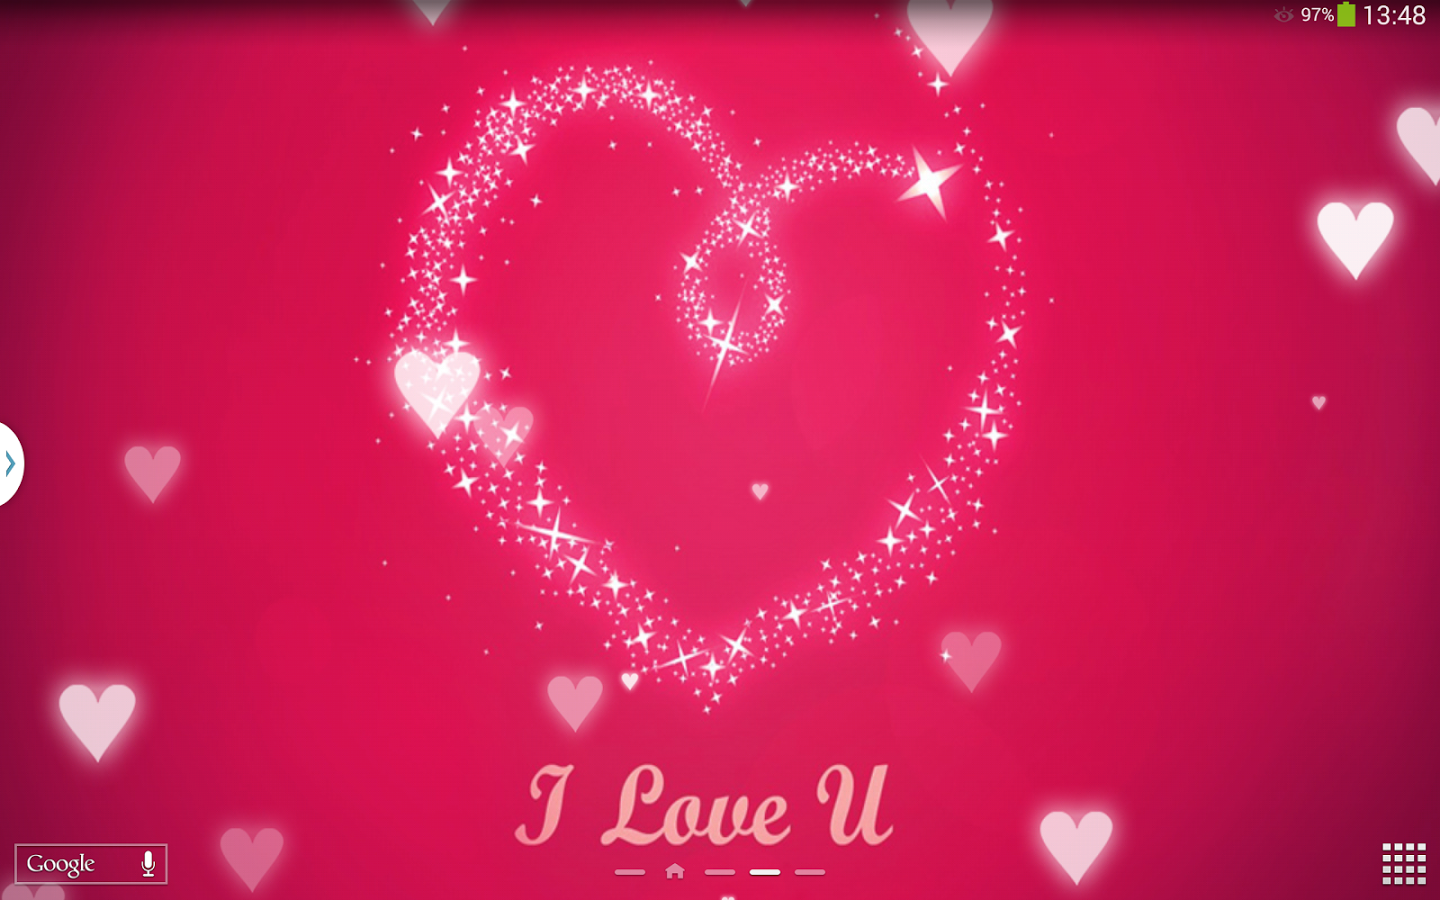 I Love You Live Wallpaper - Love U Live - 1440x900 Wallpaper 